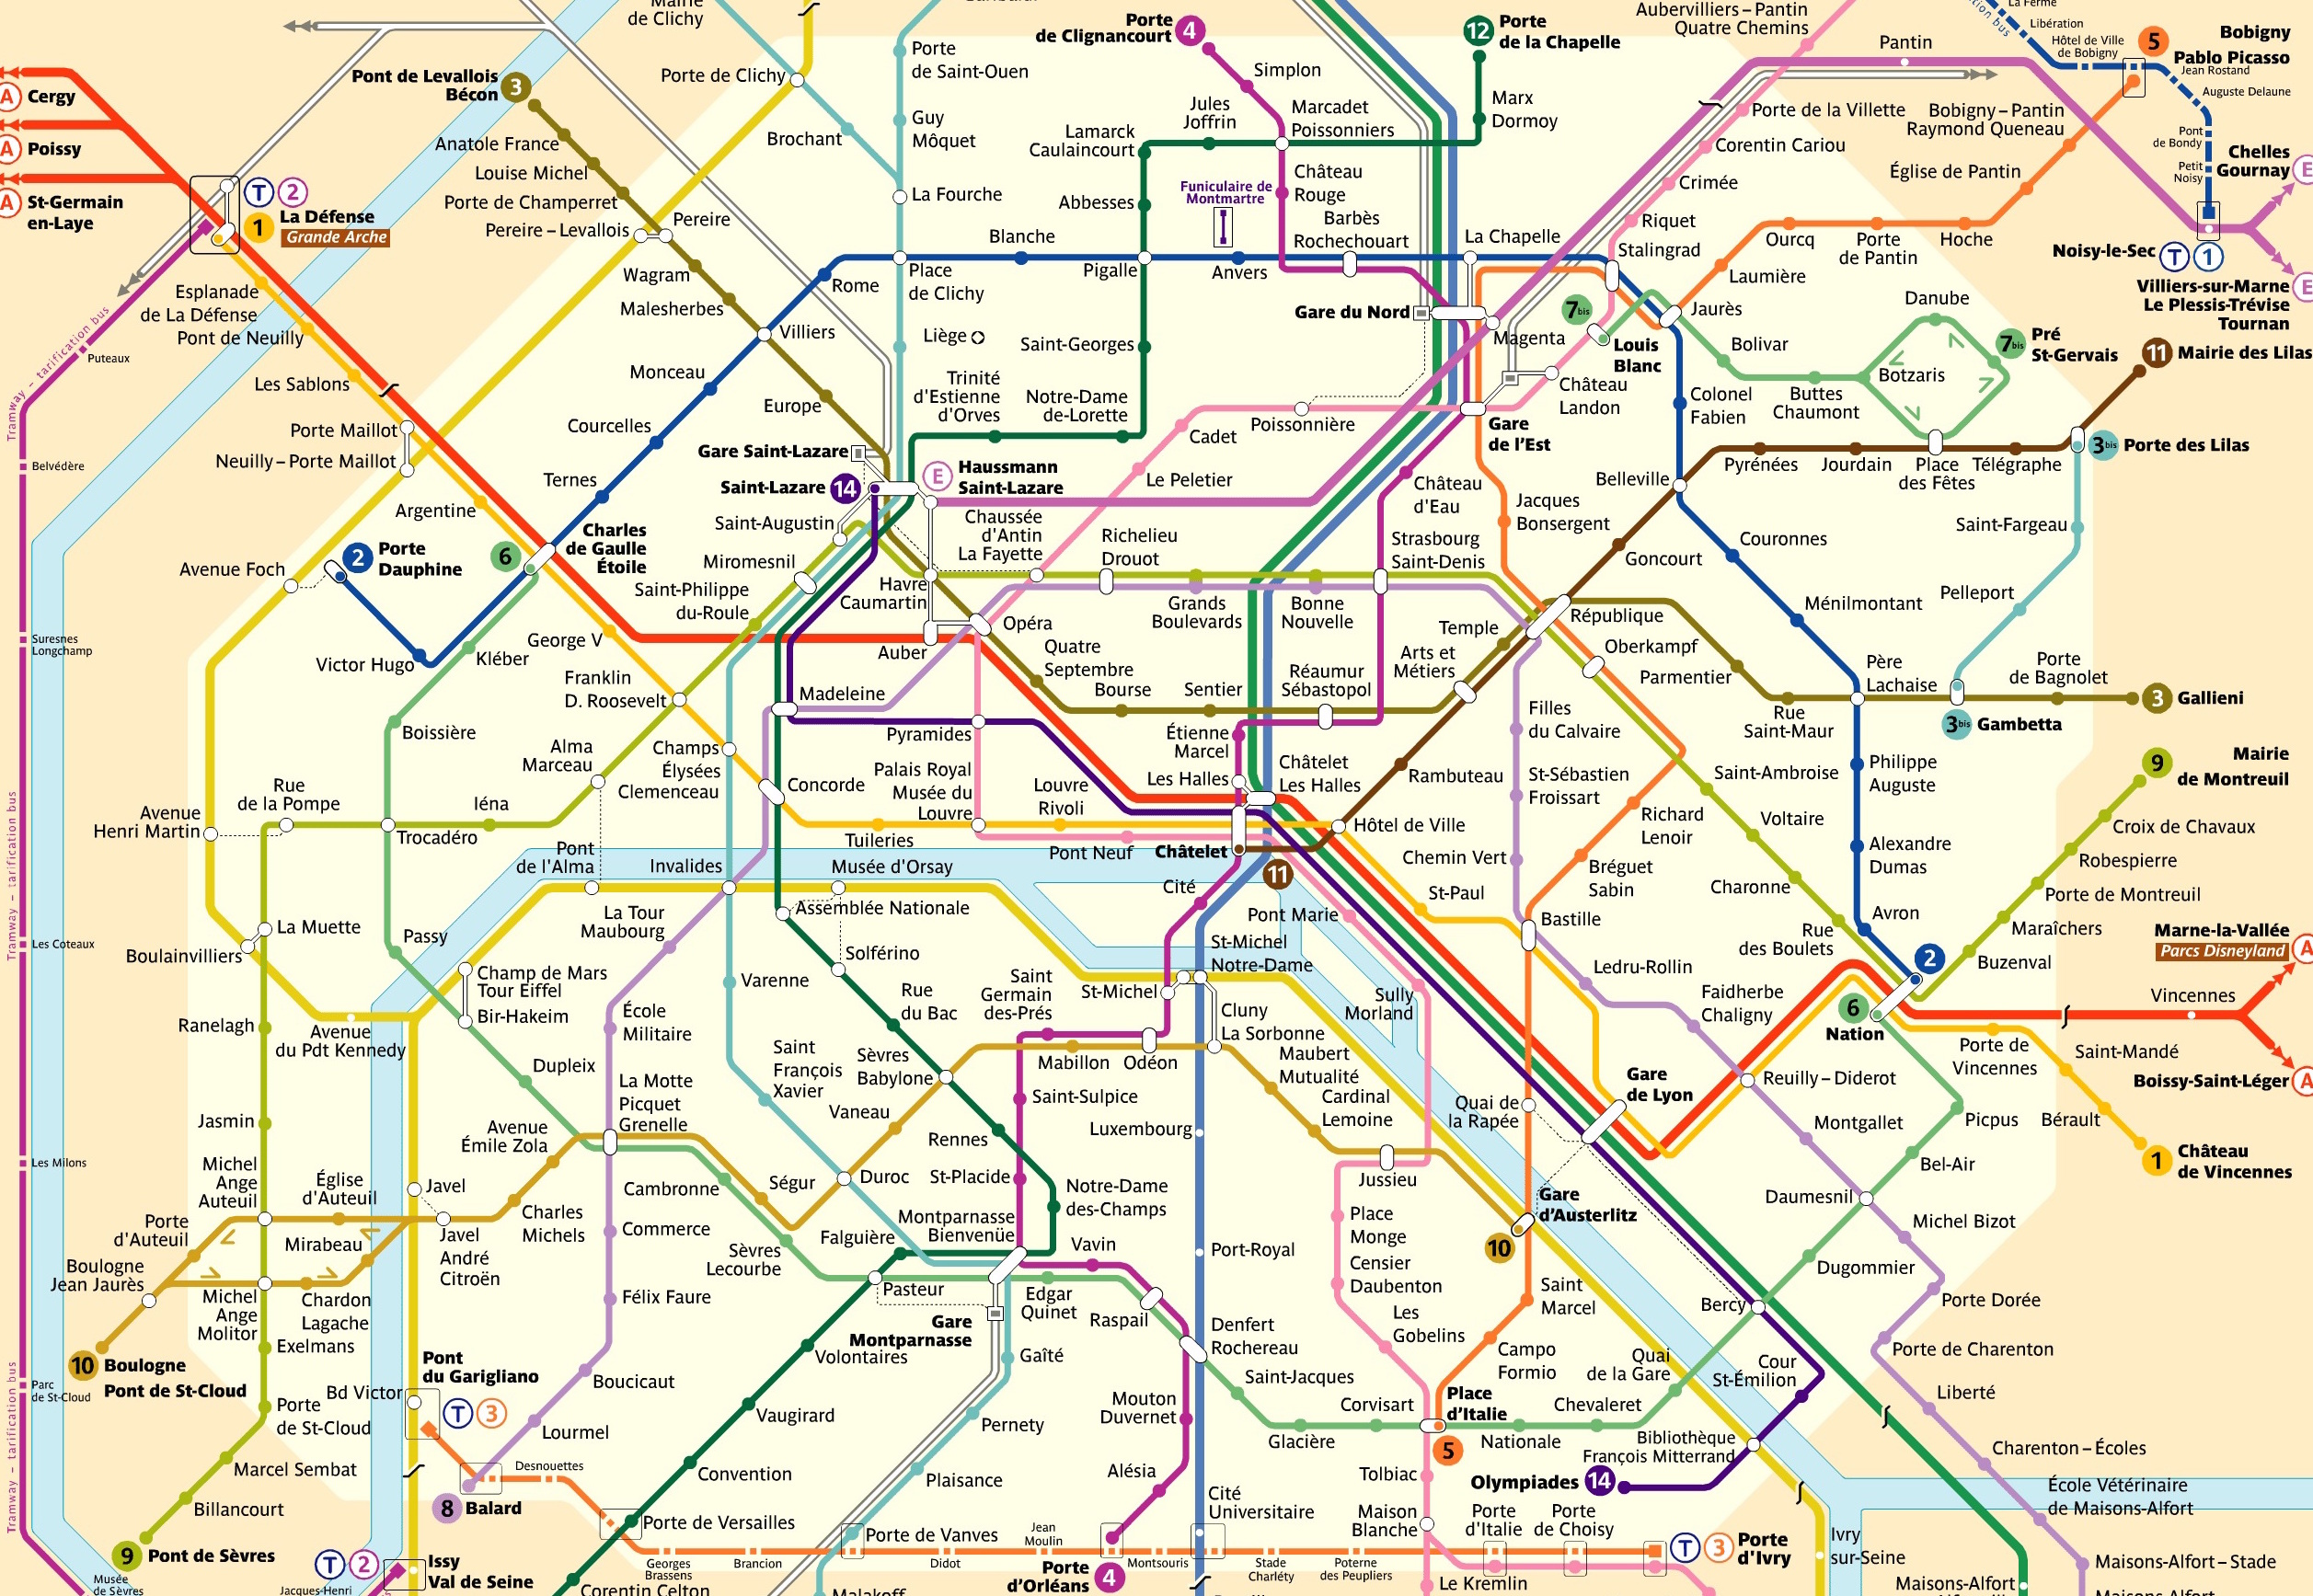 Le réseau métropolitain de Paris est composé de 16 lignes, 302 stations nominales et a 219,9 kilomètres de longueur.